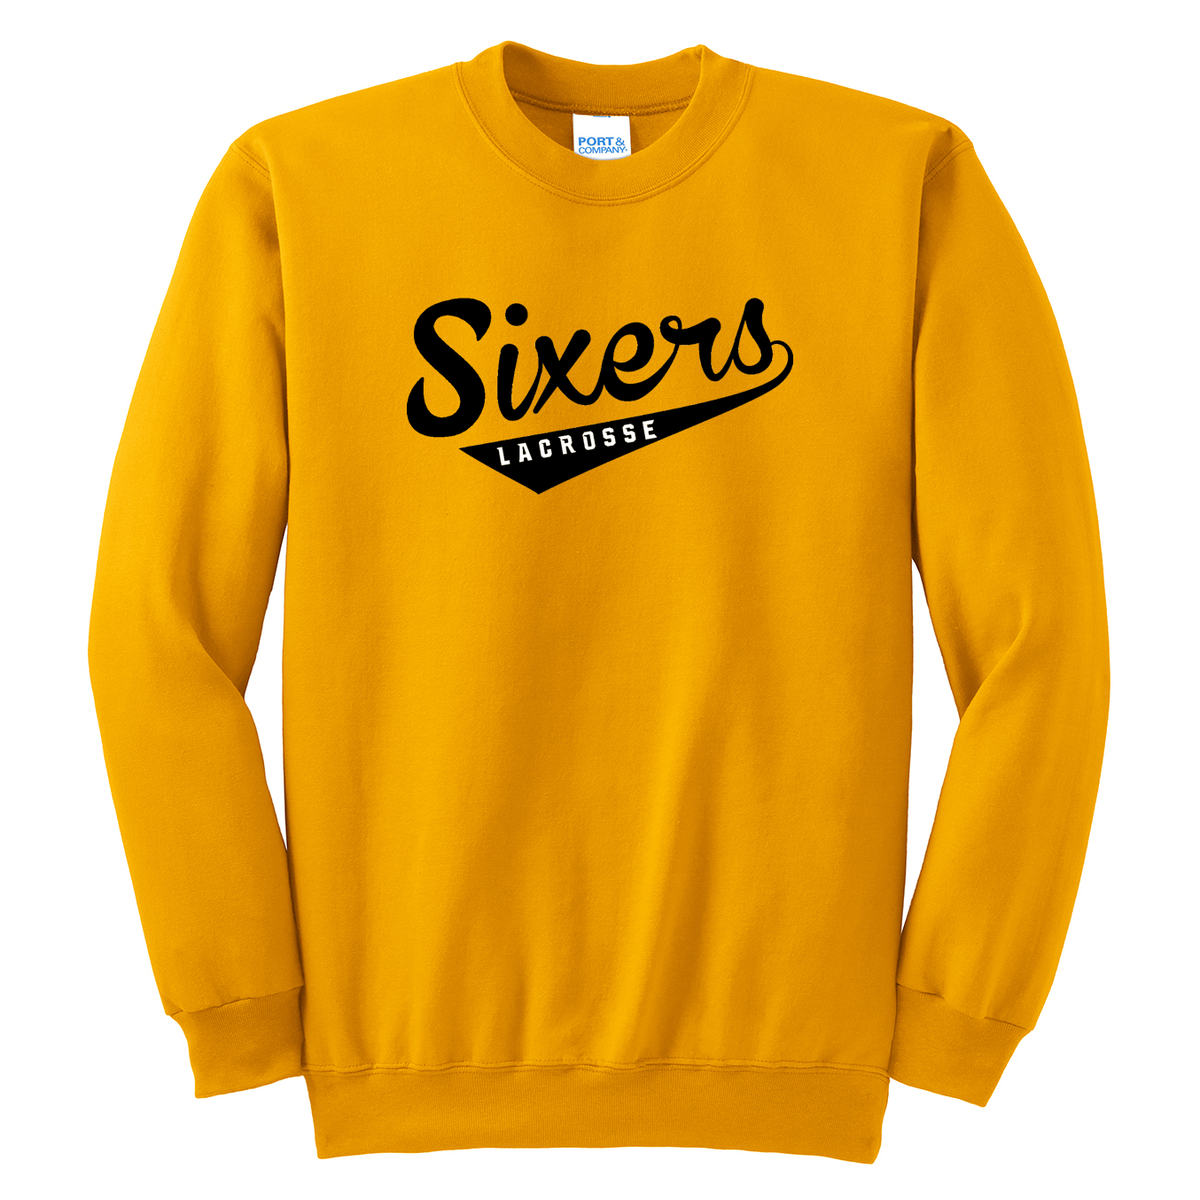 Sixers Lacrosse Crew Neck Sweater